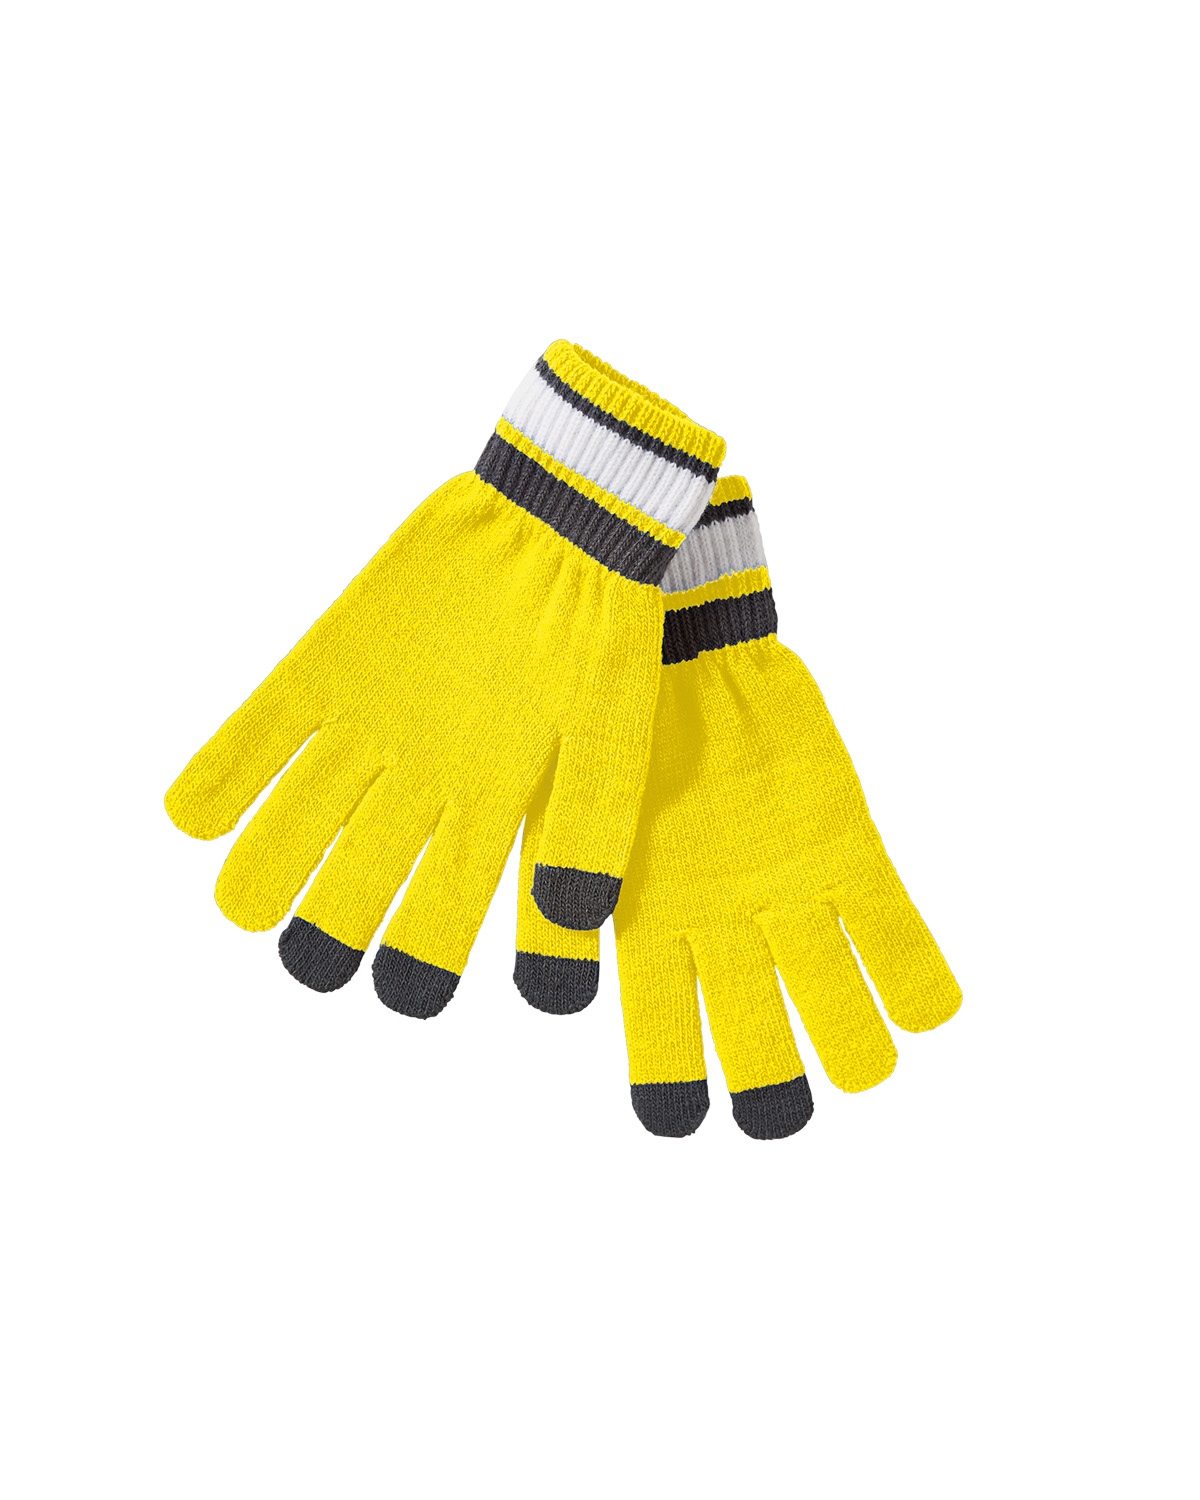 Holloway 223838 - Acrylic Rib Knit Comeback Gloves